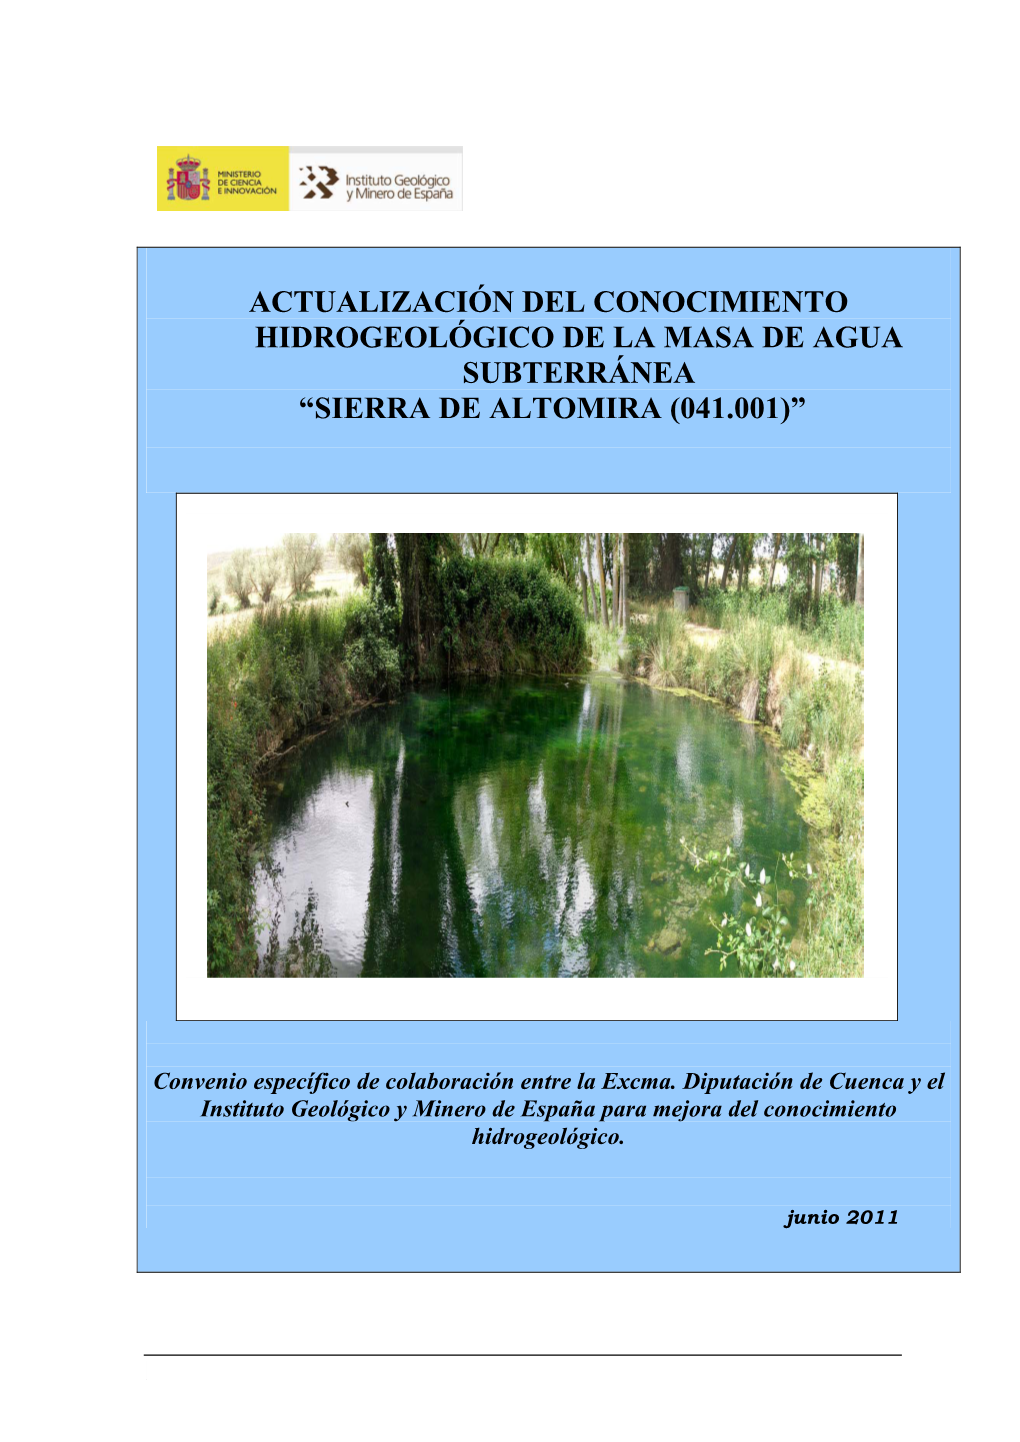 Actualización Del Conocimiento Hidrogeológico De La Masa De Agua Subterránea “Sierra De Altomira (041.001)”